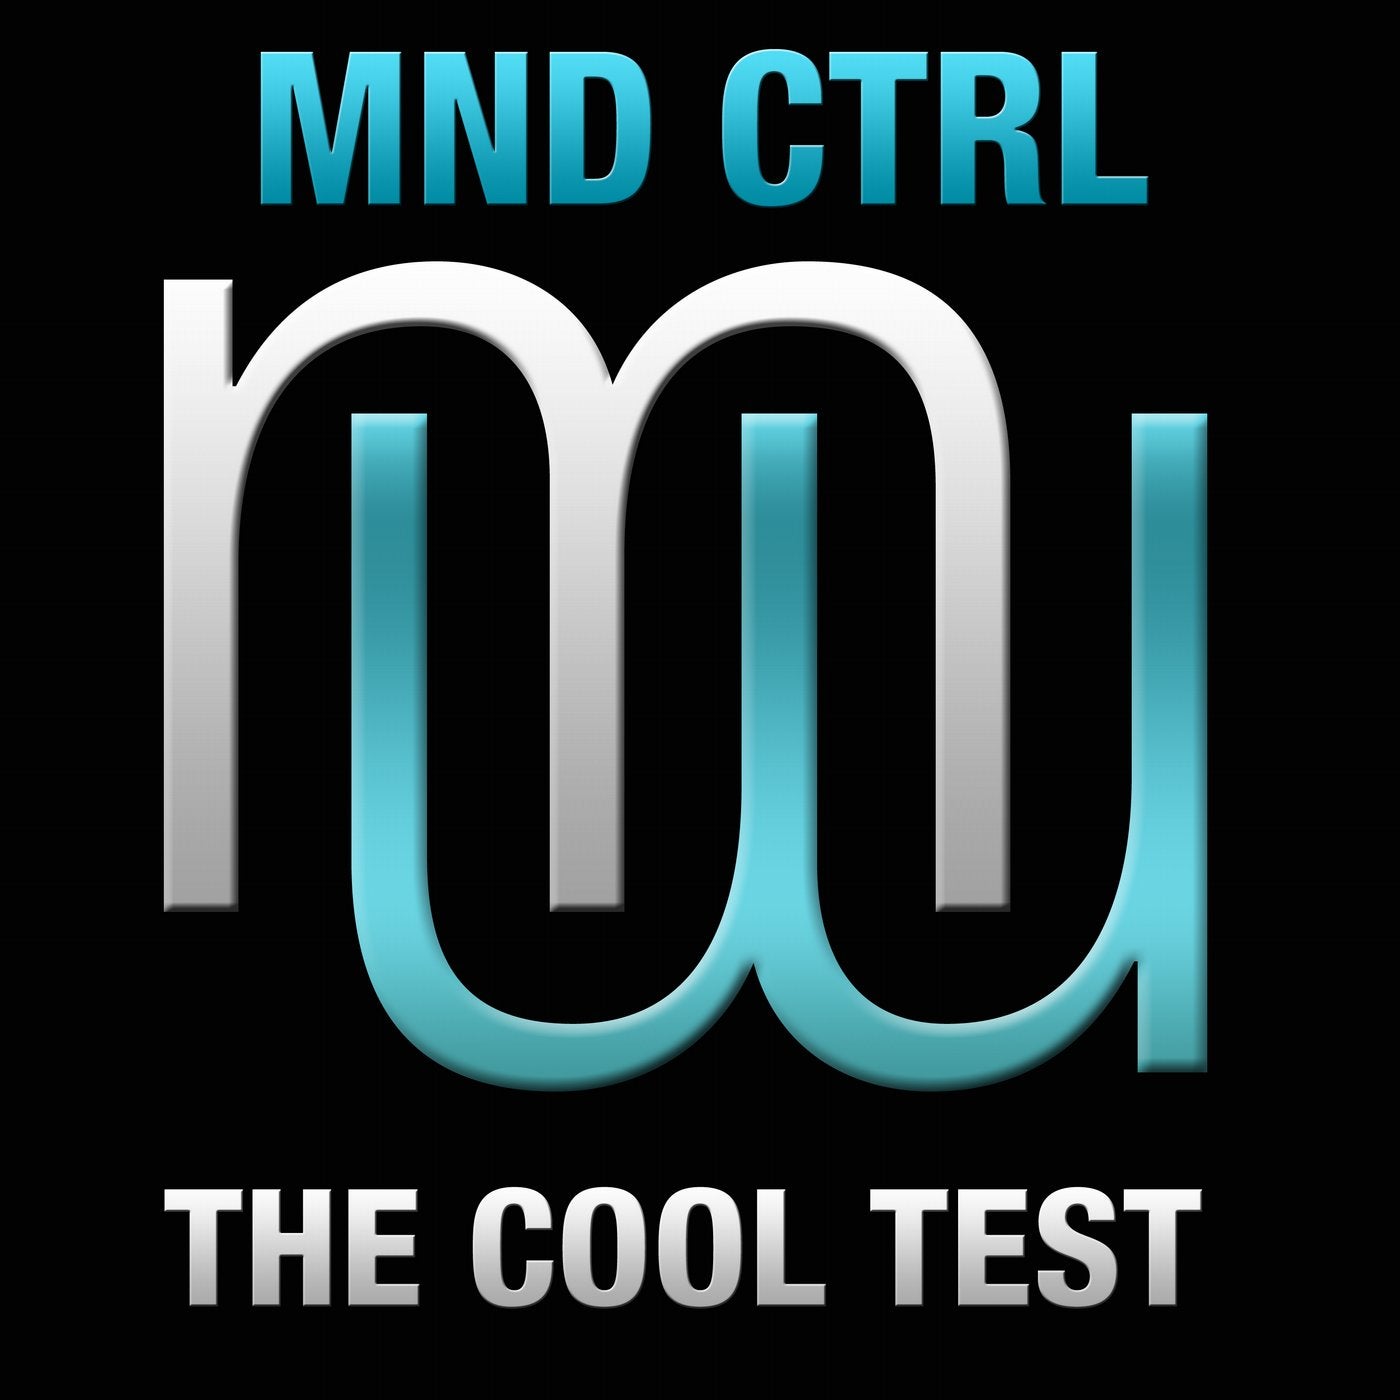 MND CTRL - The Cool Test